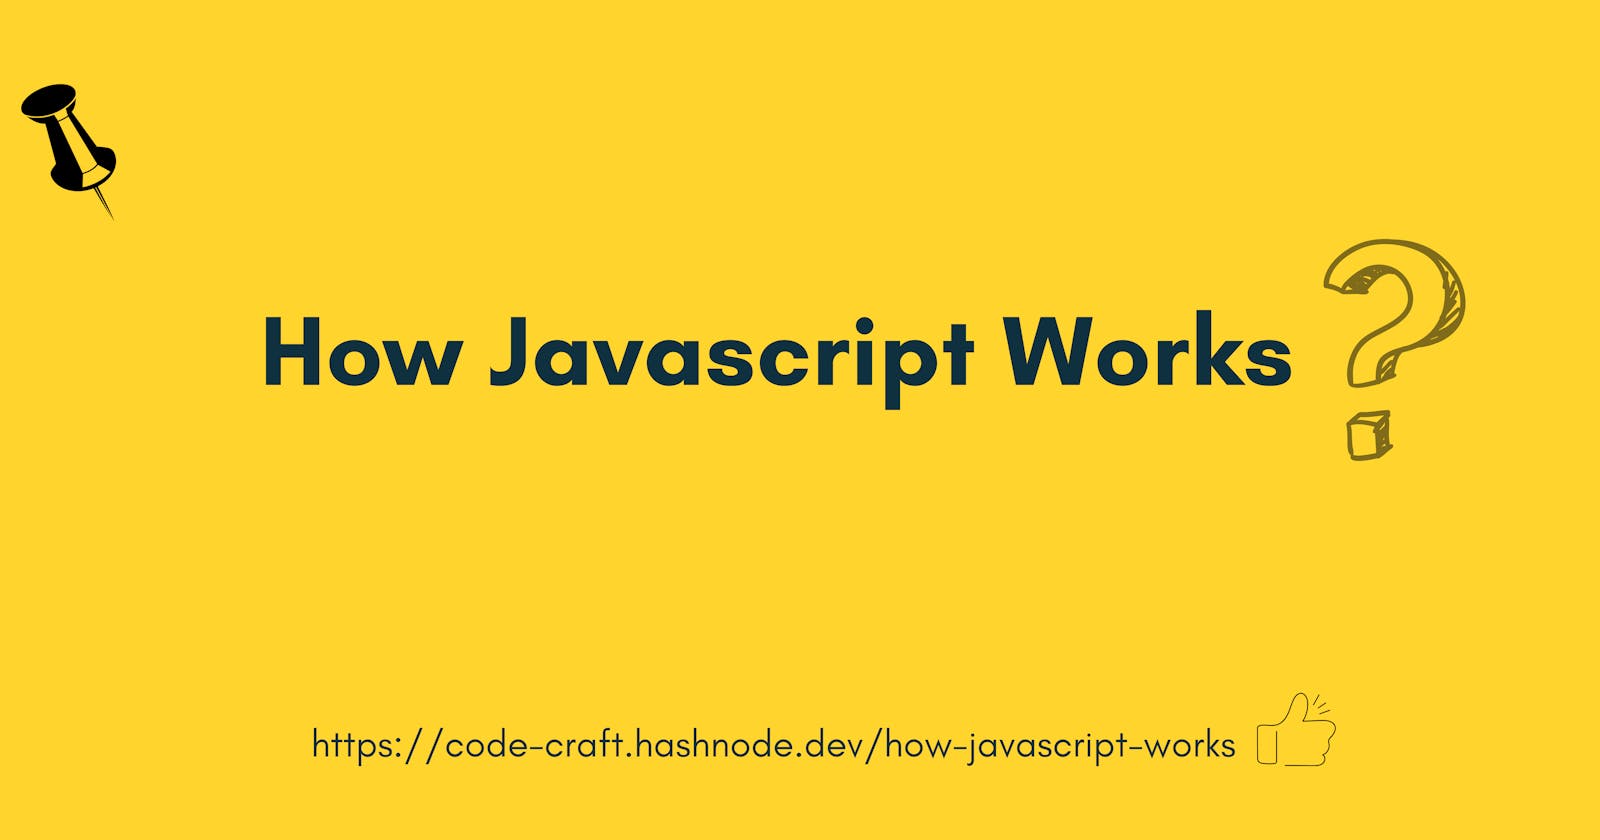 How Javascript Works! 😳